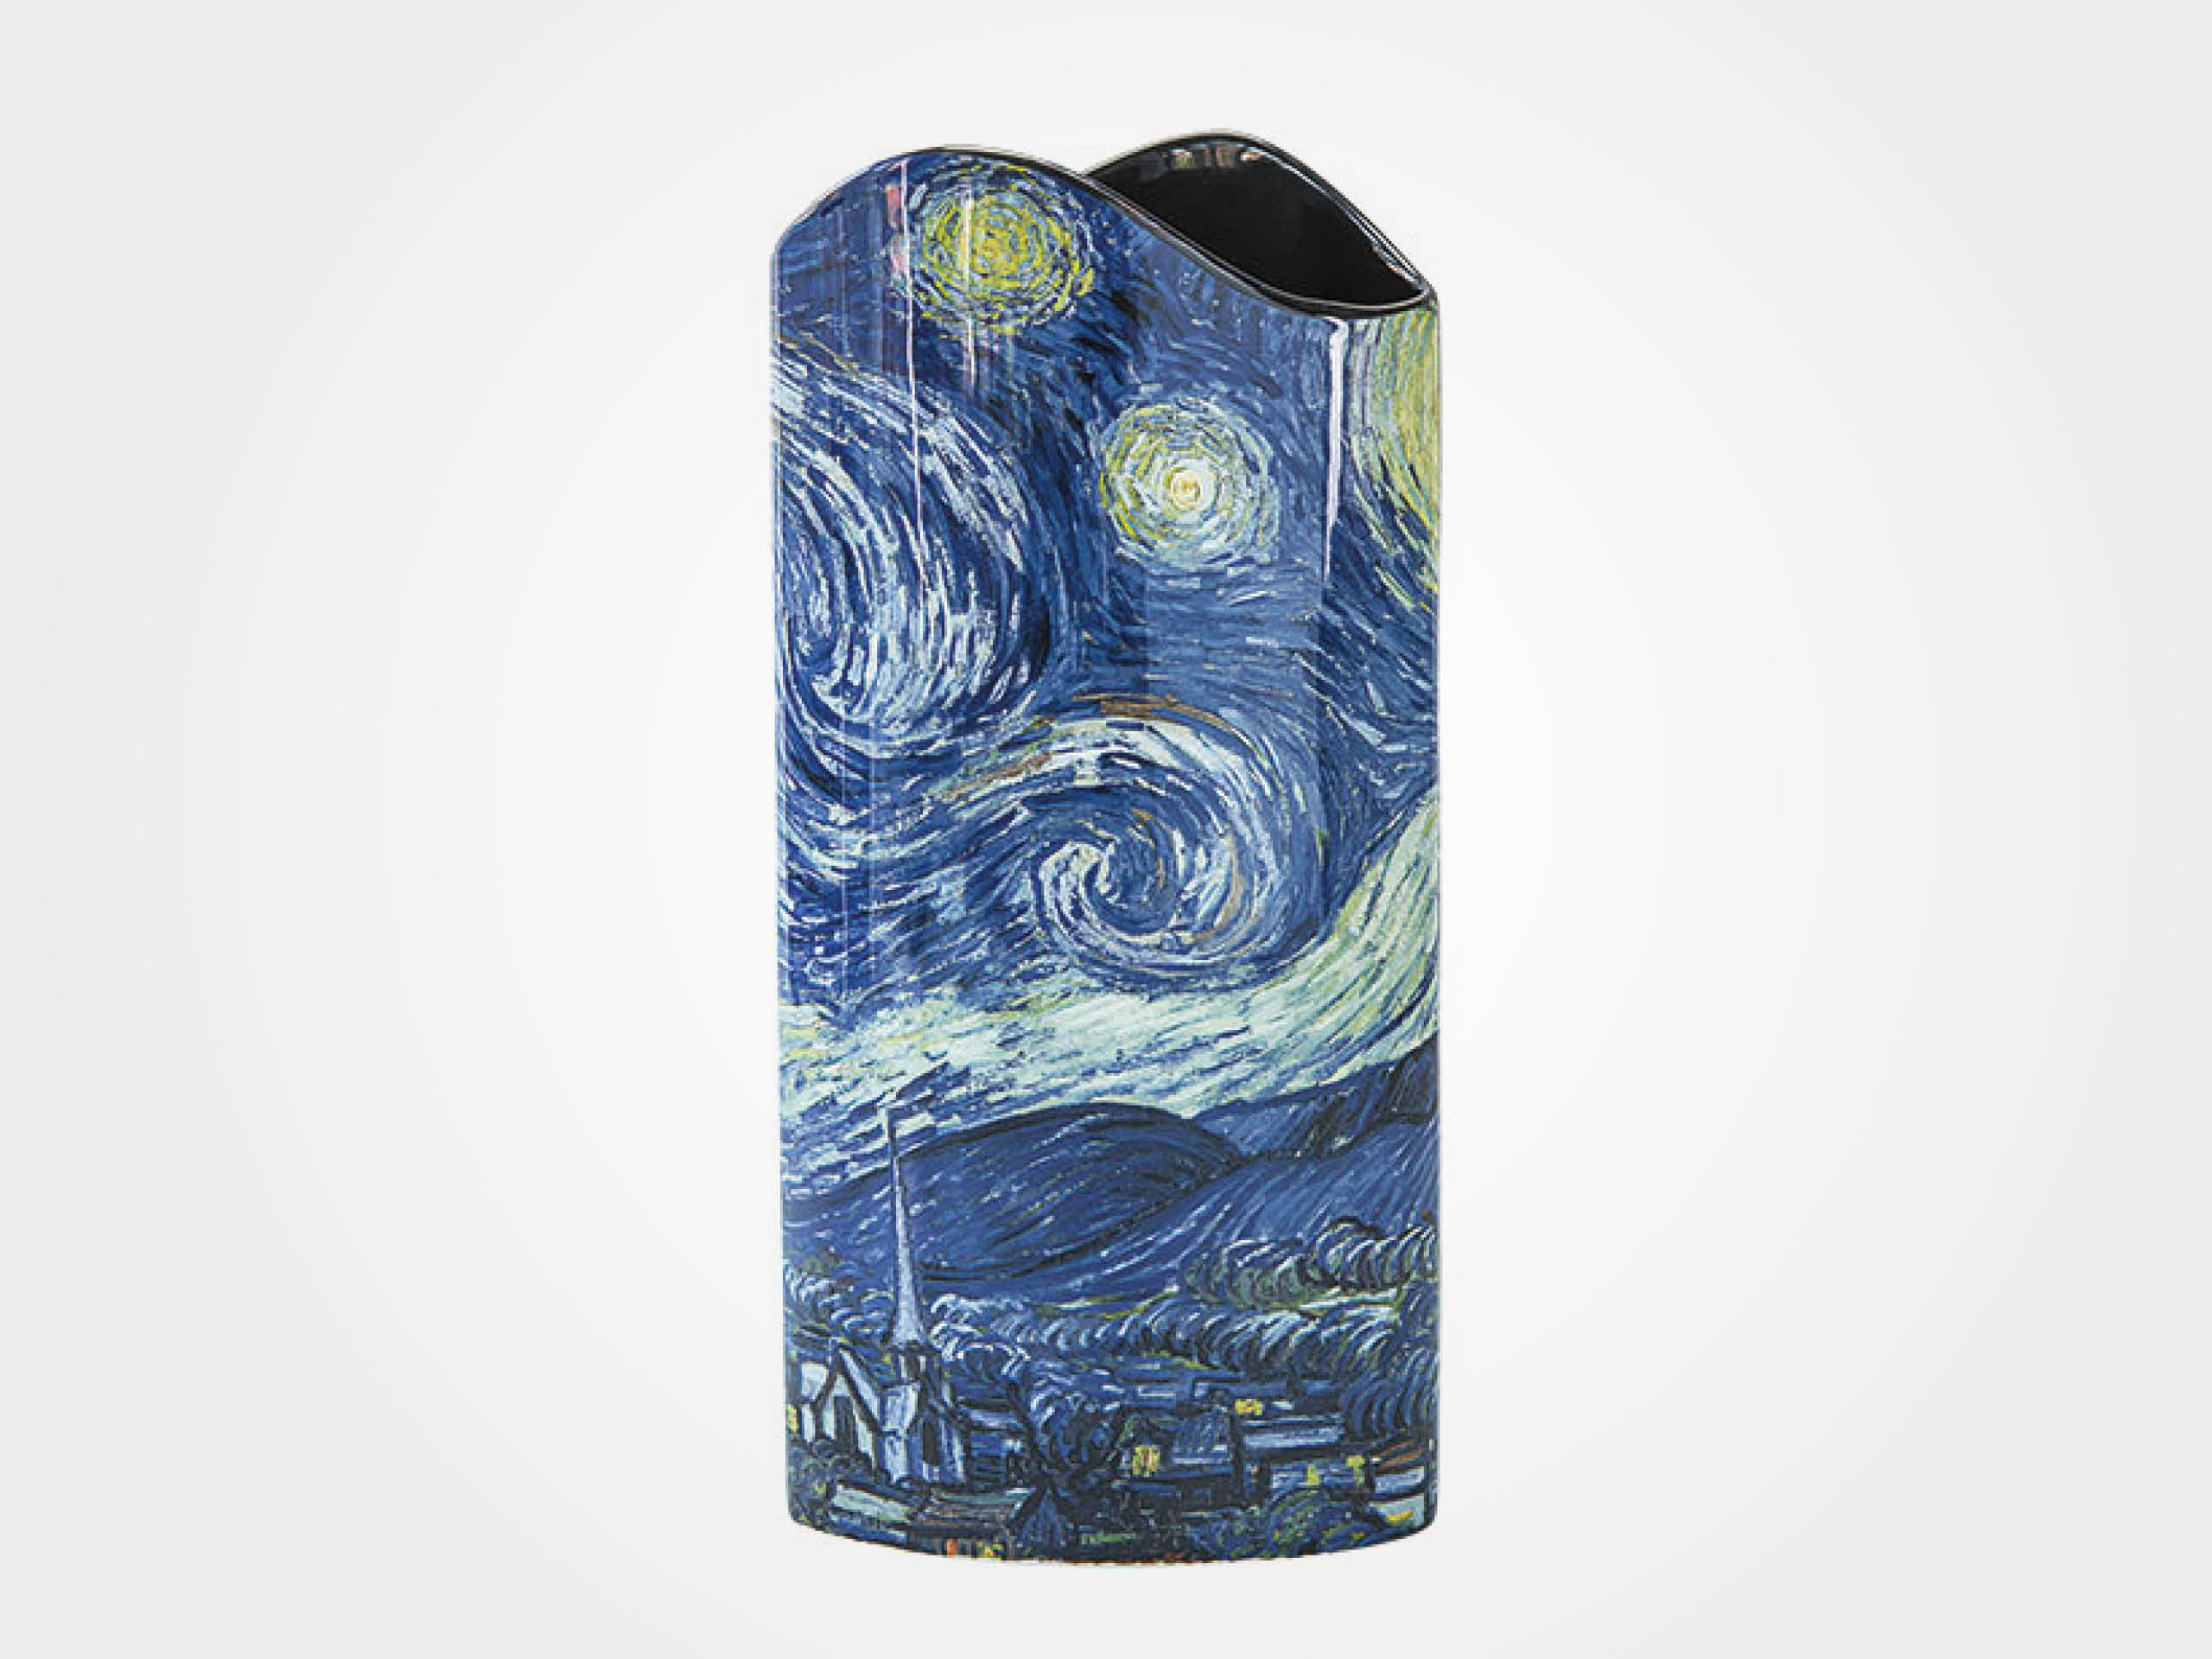 Vincent van Gogh: Porzellanvase "Sternennacht"